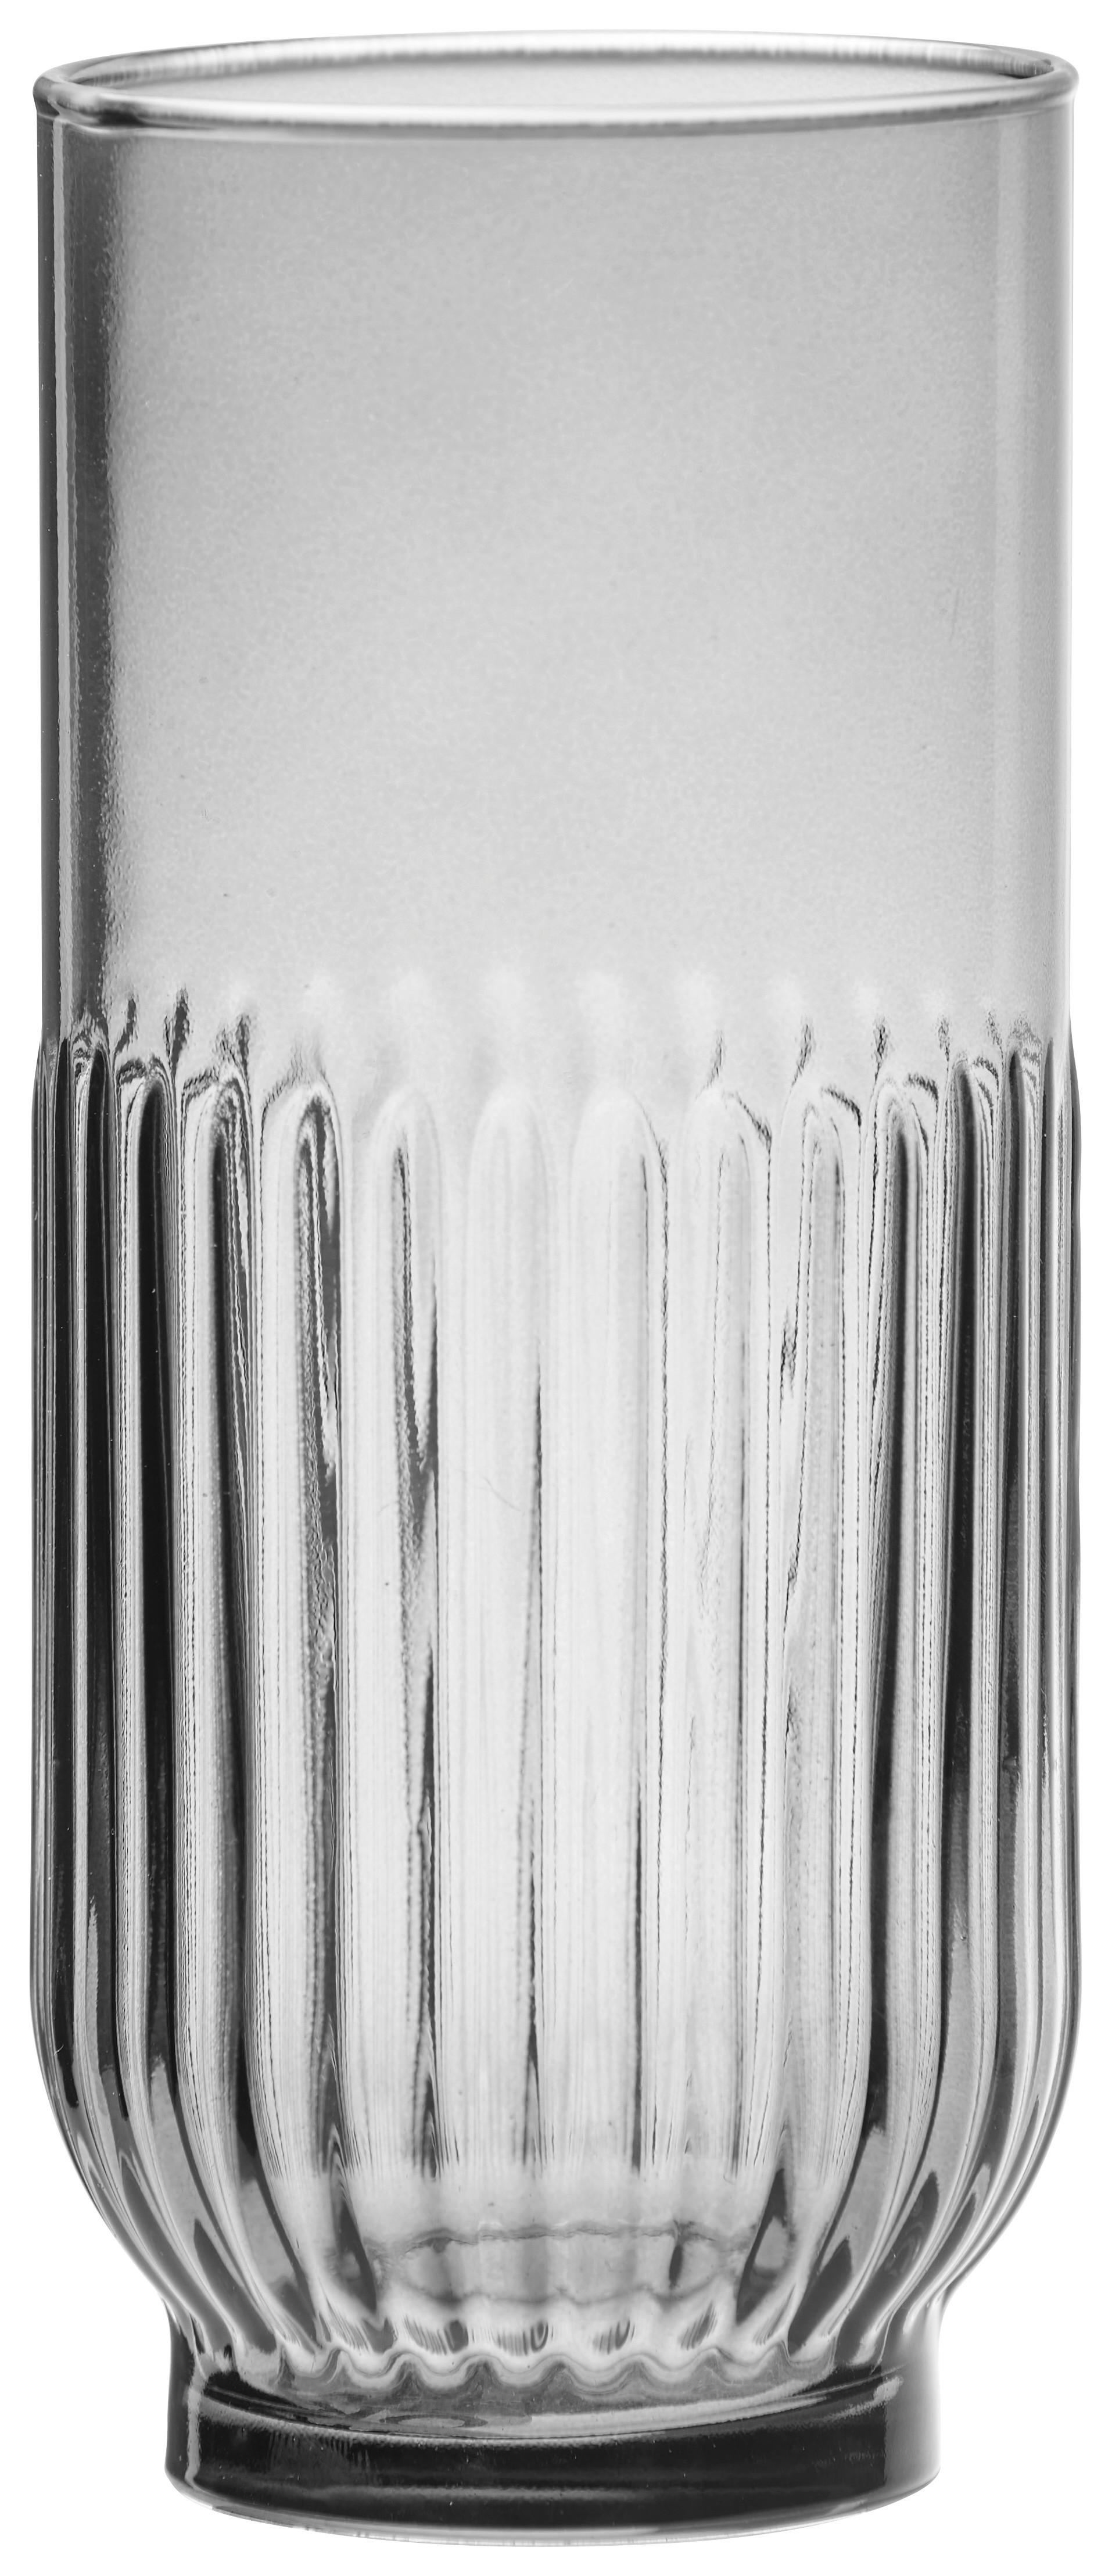 Longdrinkglas Black Skye in Dunkelgrau ca. 395ml - Dunkelgrau, Modern, Glas (6,5/15cm) - Premium Living